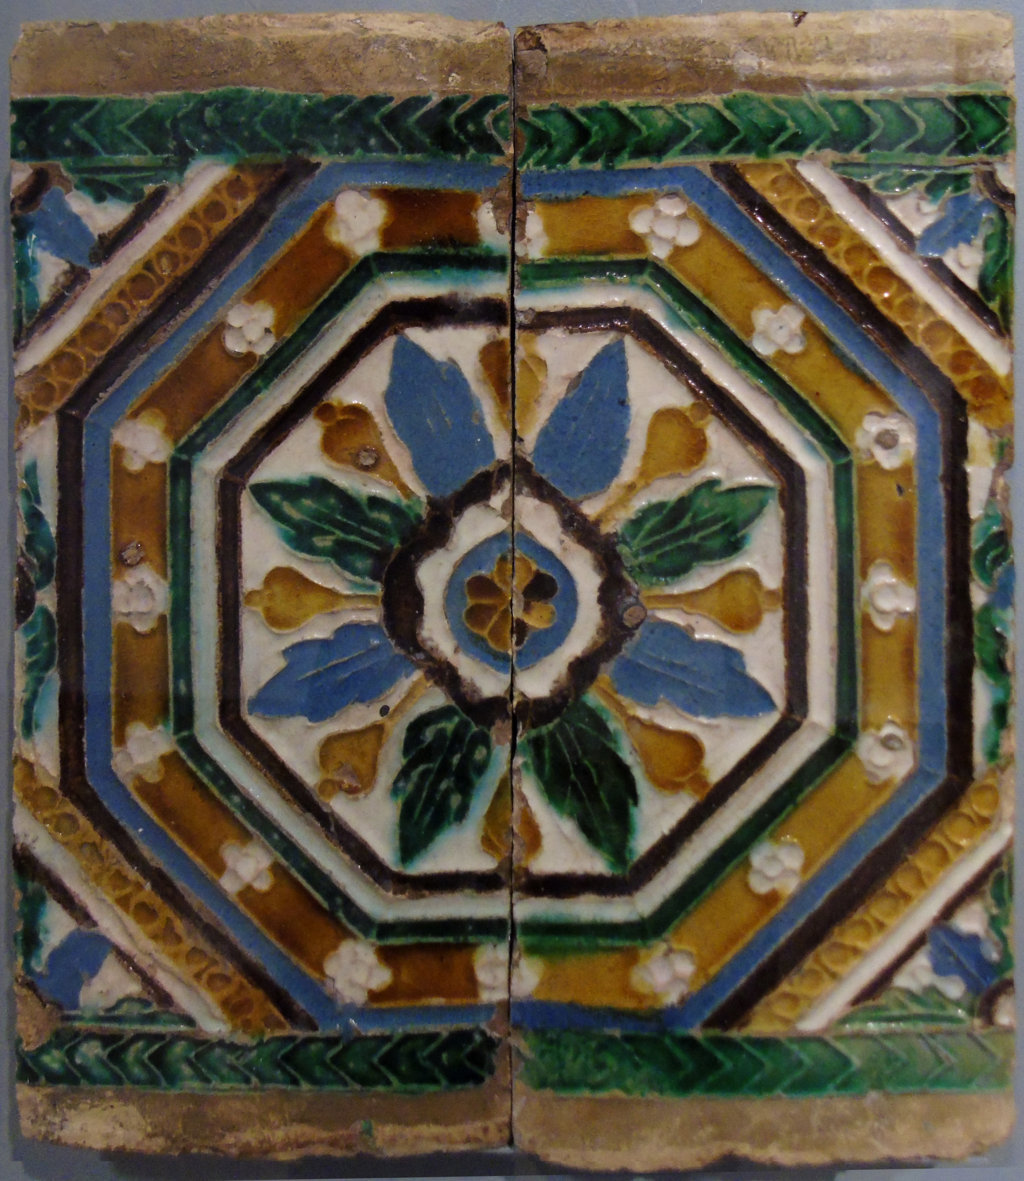 00177. Par de azulejos por tabla para techo. Museo de Artes y Costumbres Populares. Sevilla.